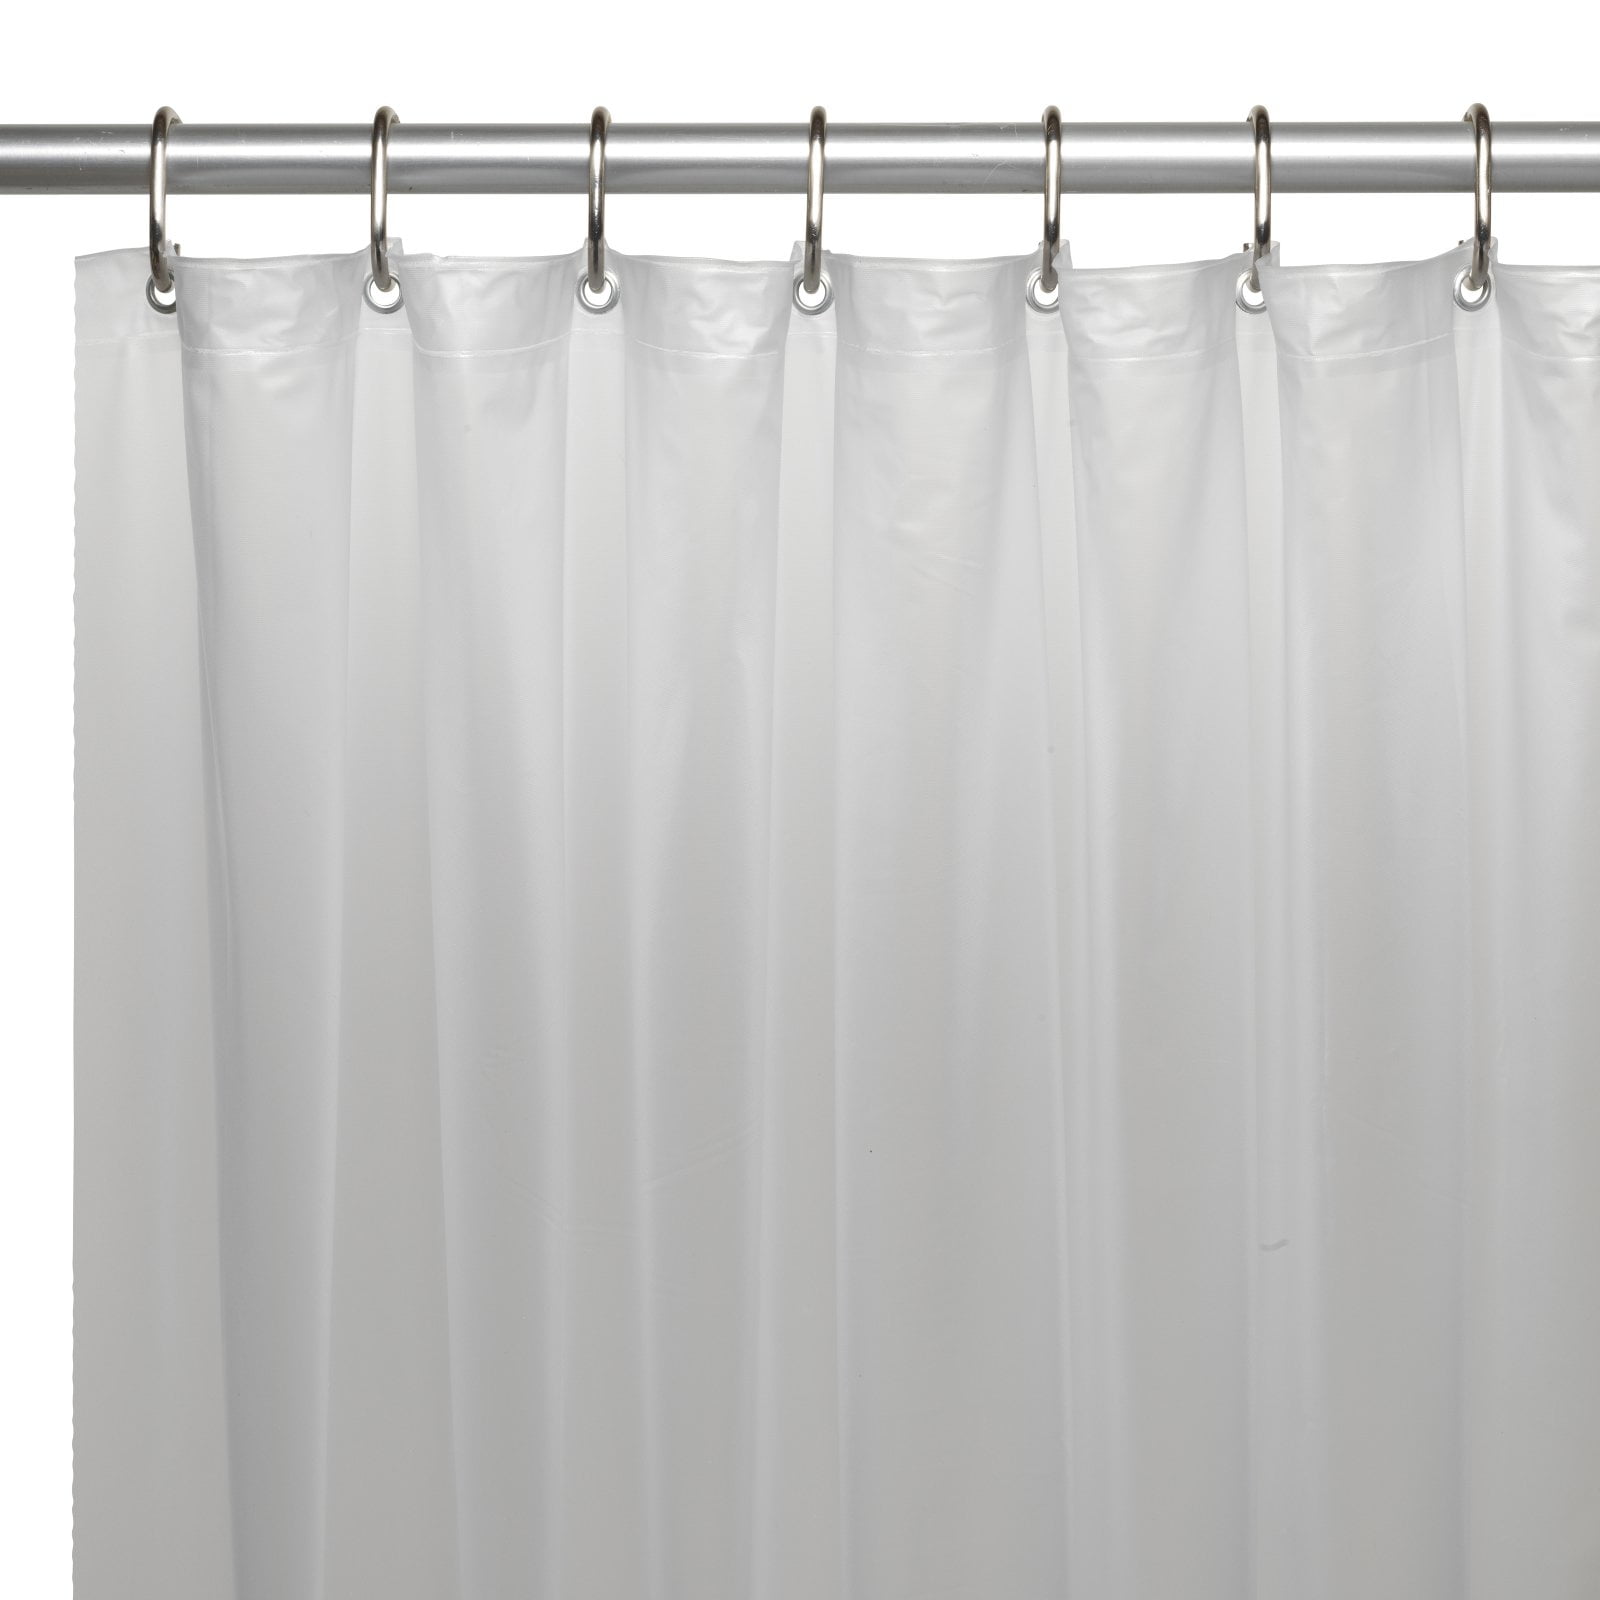 Sponge, show original title Details about  / Vingi Ricami Sheet Bathroom Towel Shower 100x150 cm